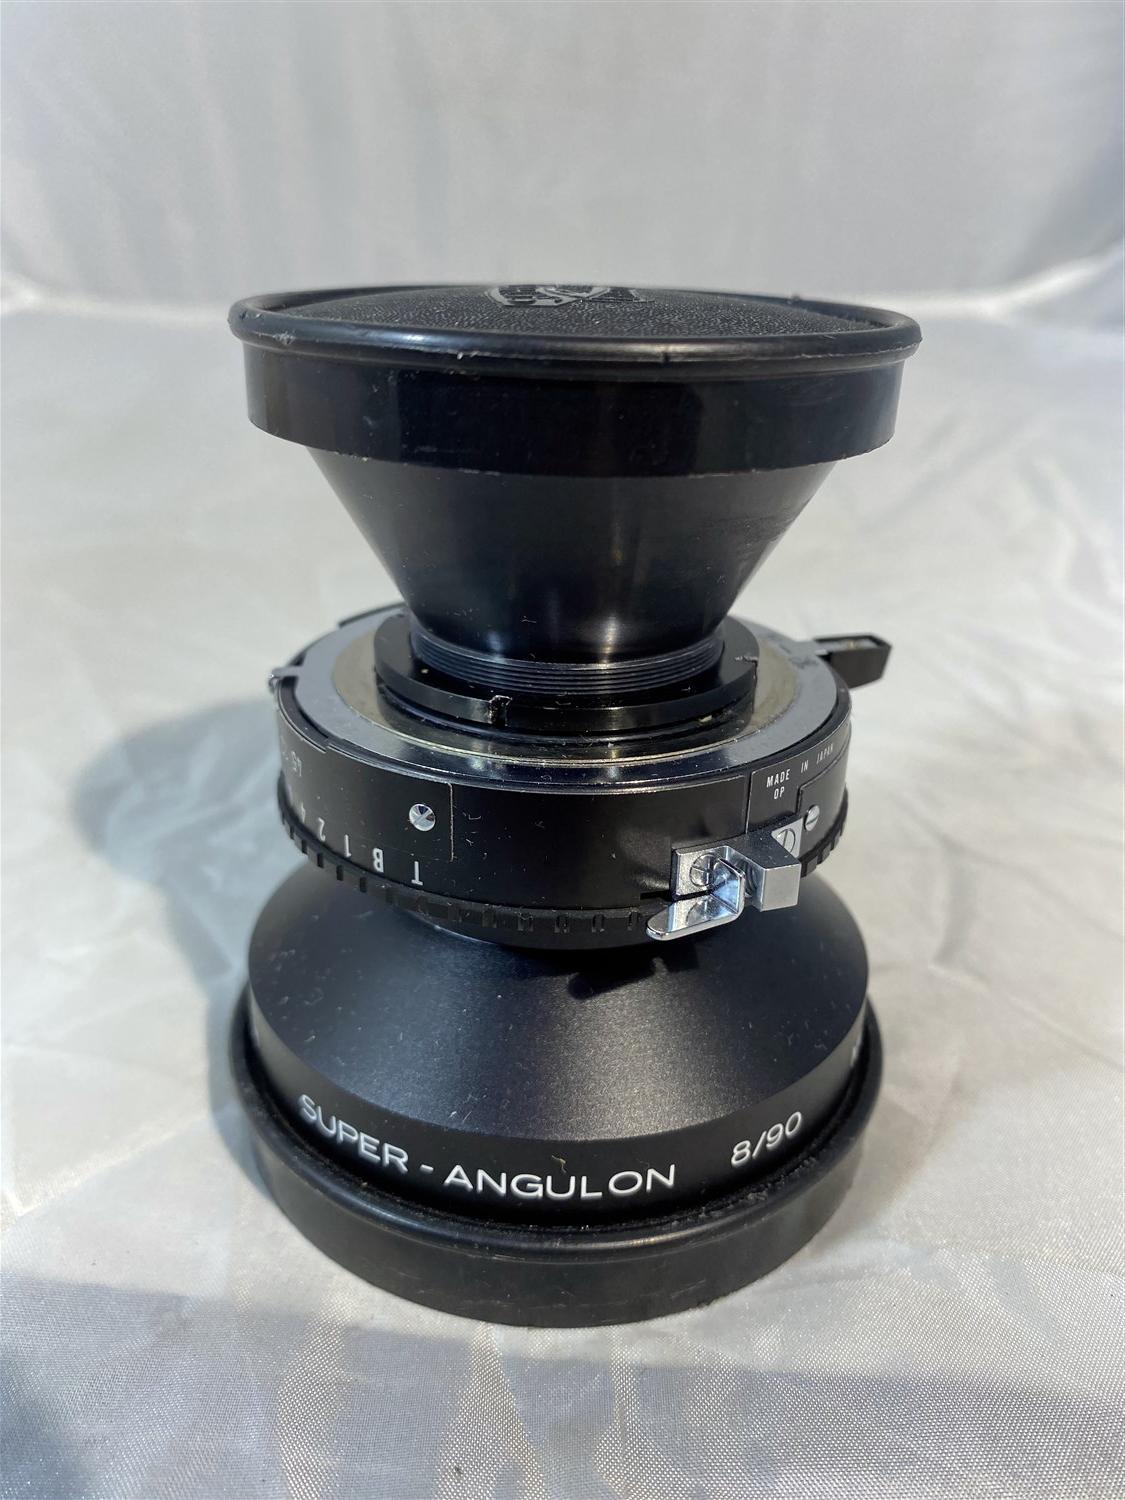 Schneider - Kreuznach Super - Angulon 8/90 Lens